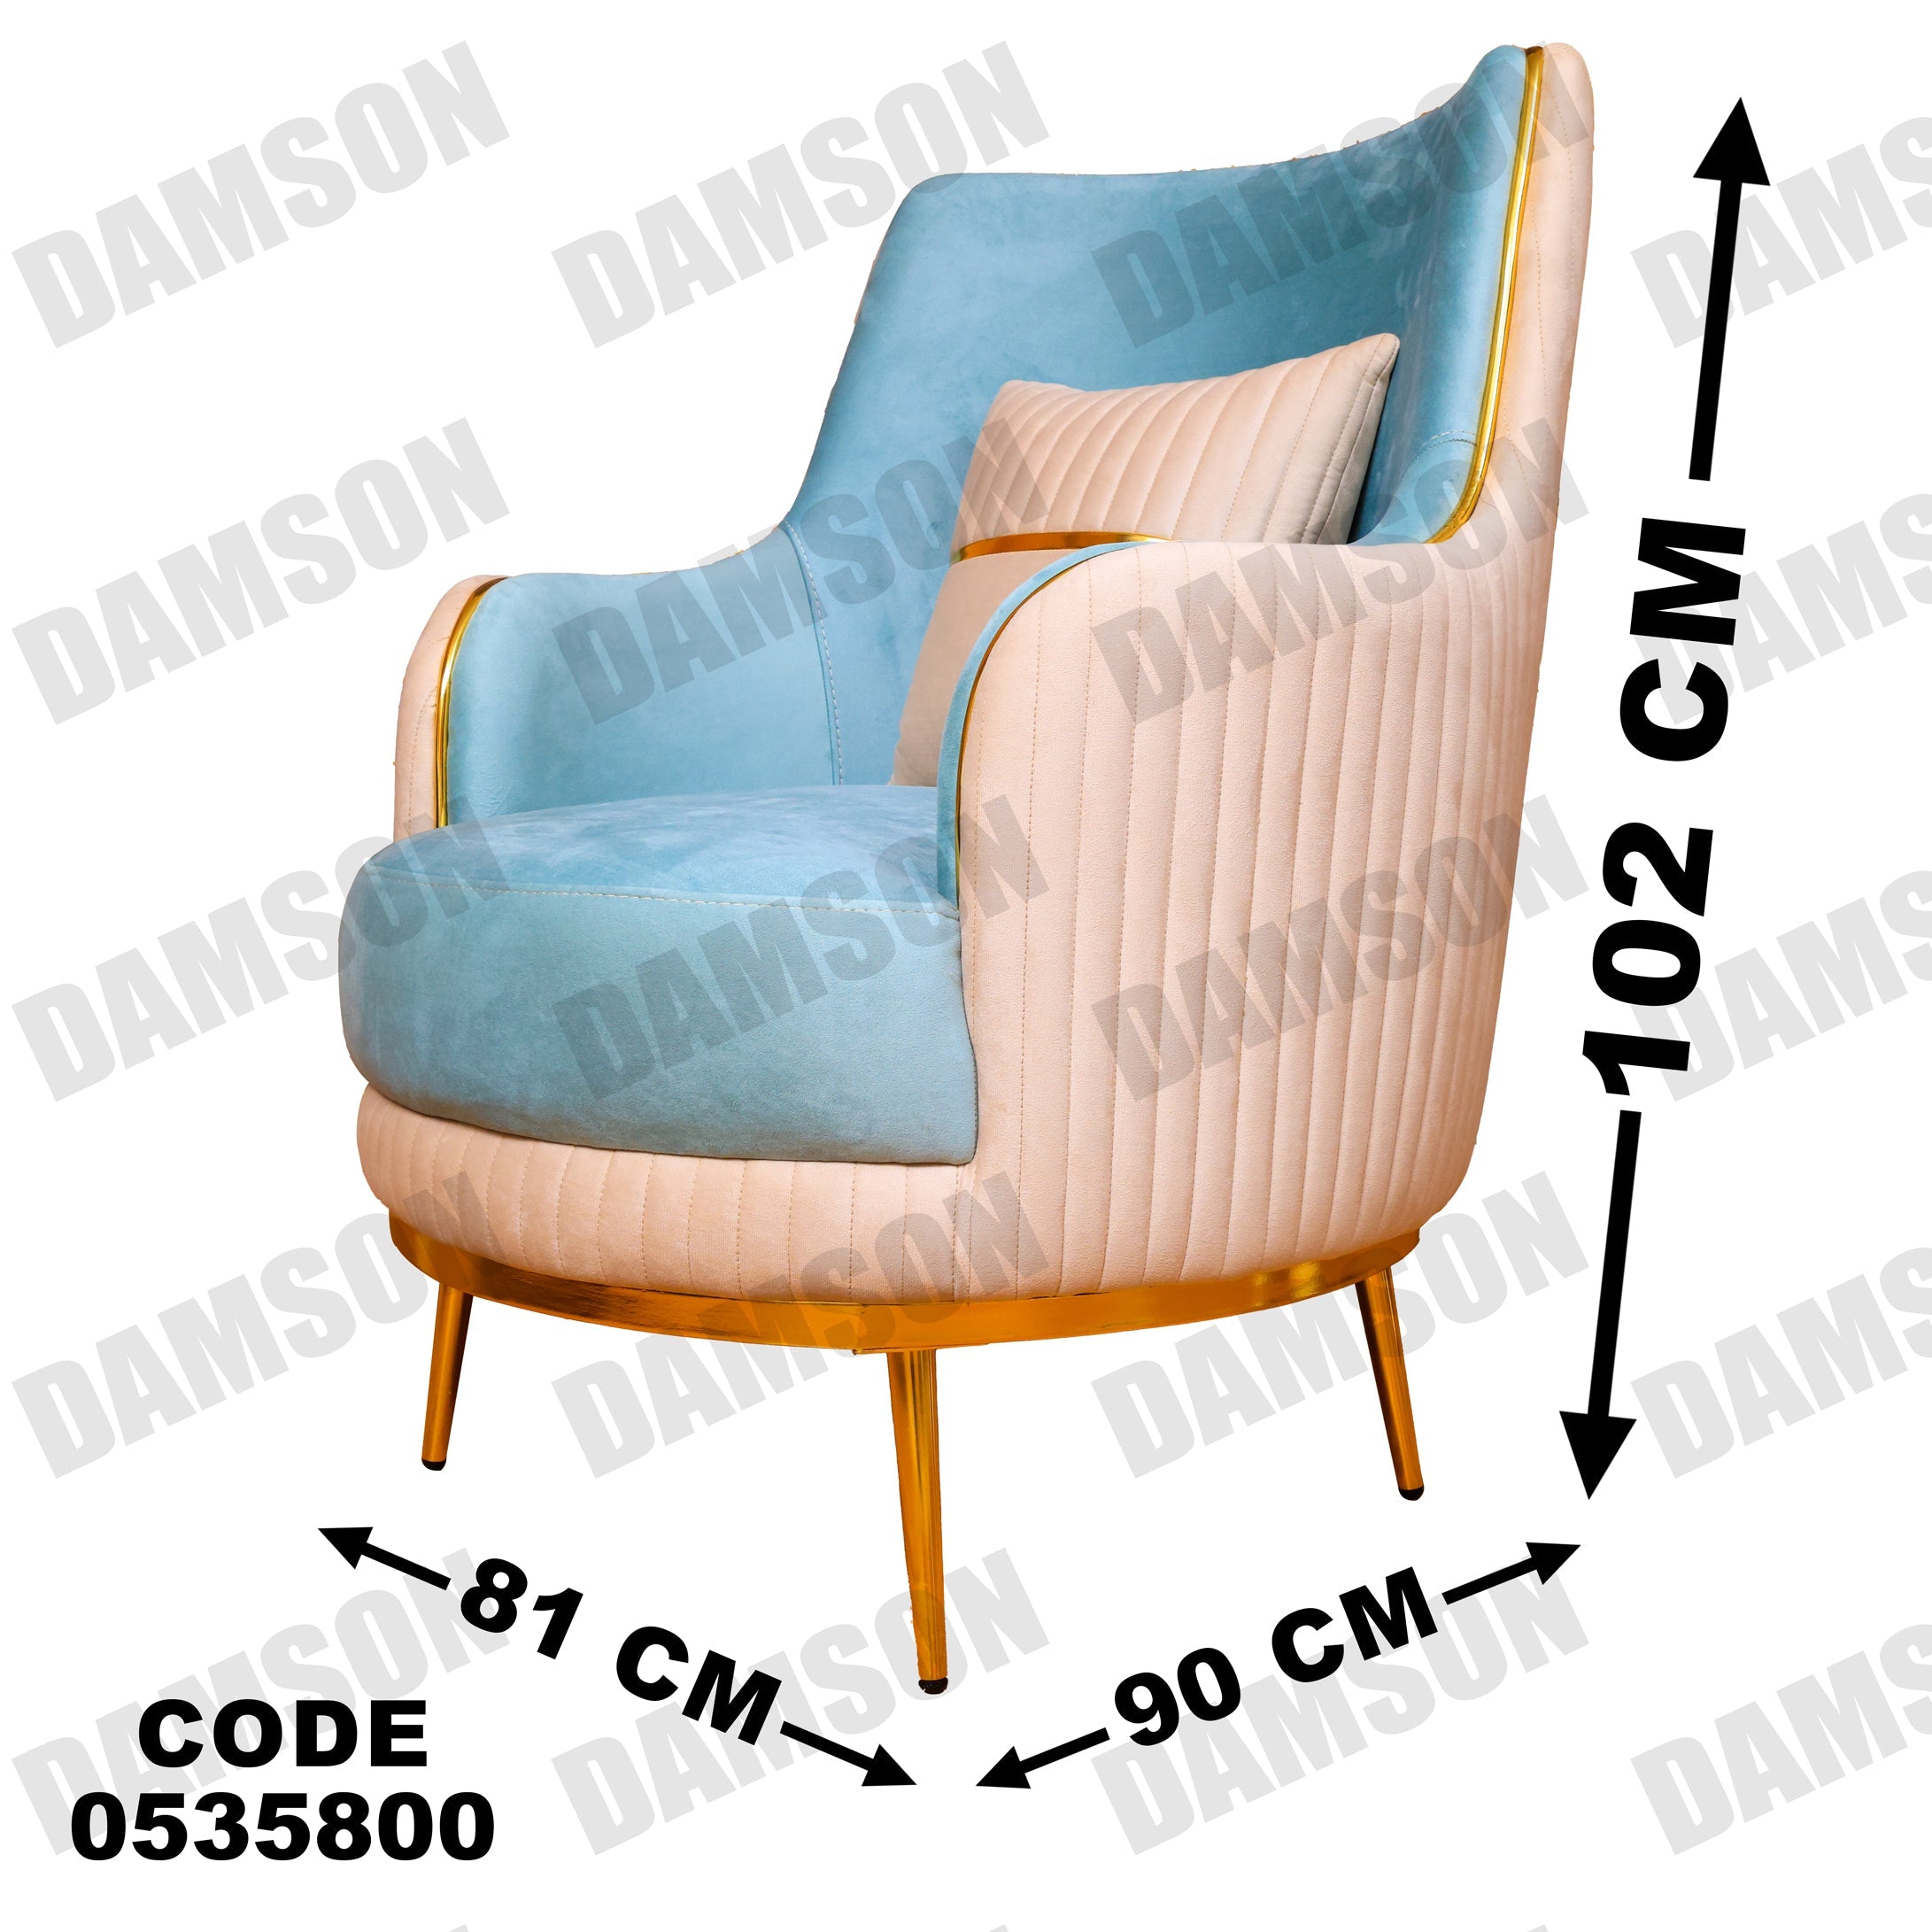 فوتية 1-358 - Damson Furnitureفوتية 1-358